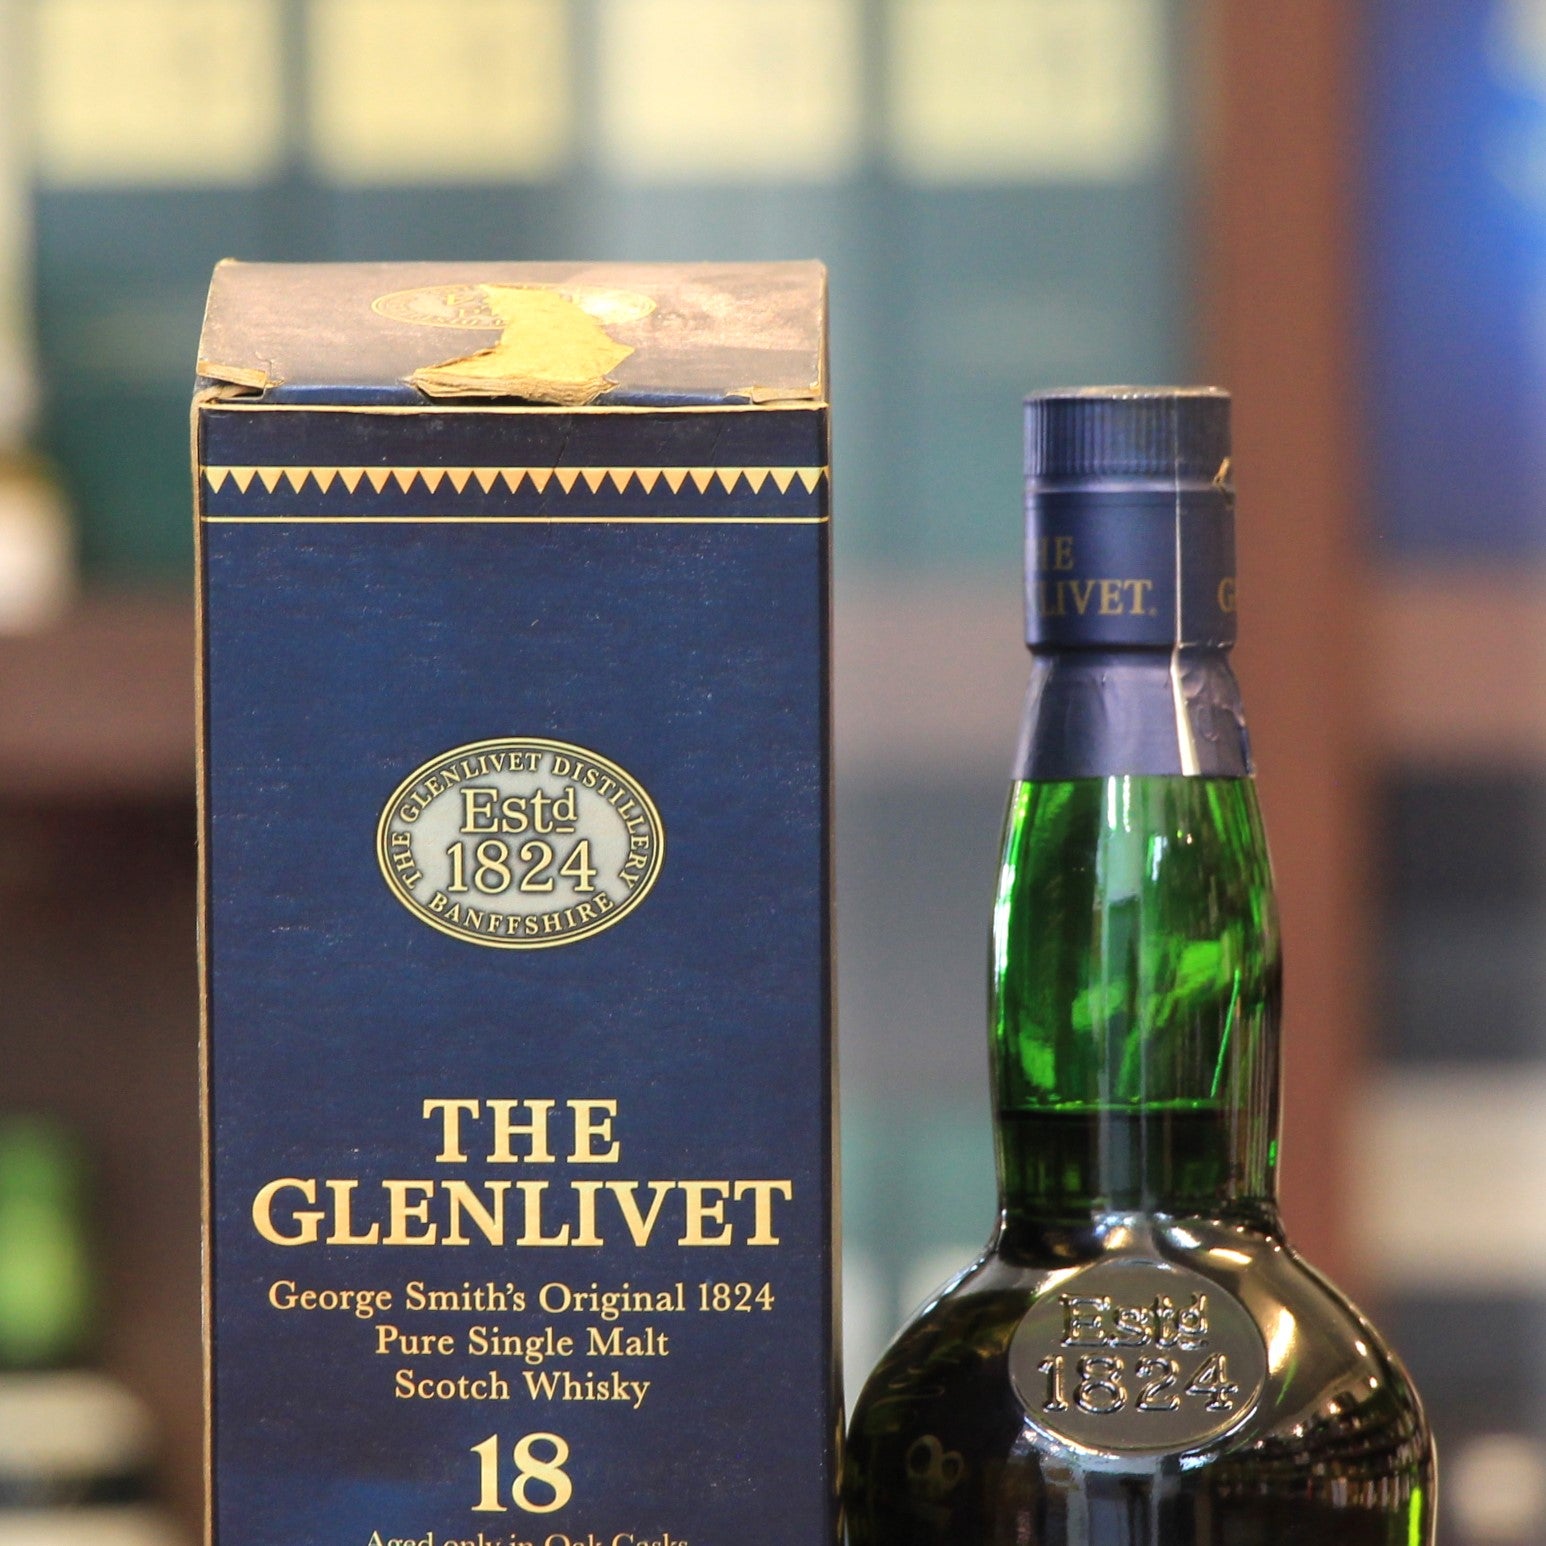 Glenlivet 18 Years Old "George Smith's Original 1824" Pure Single Malt Scotch Whisky (Old Bottling)